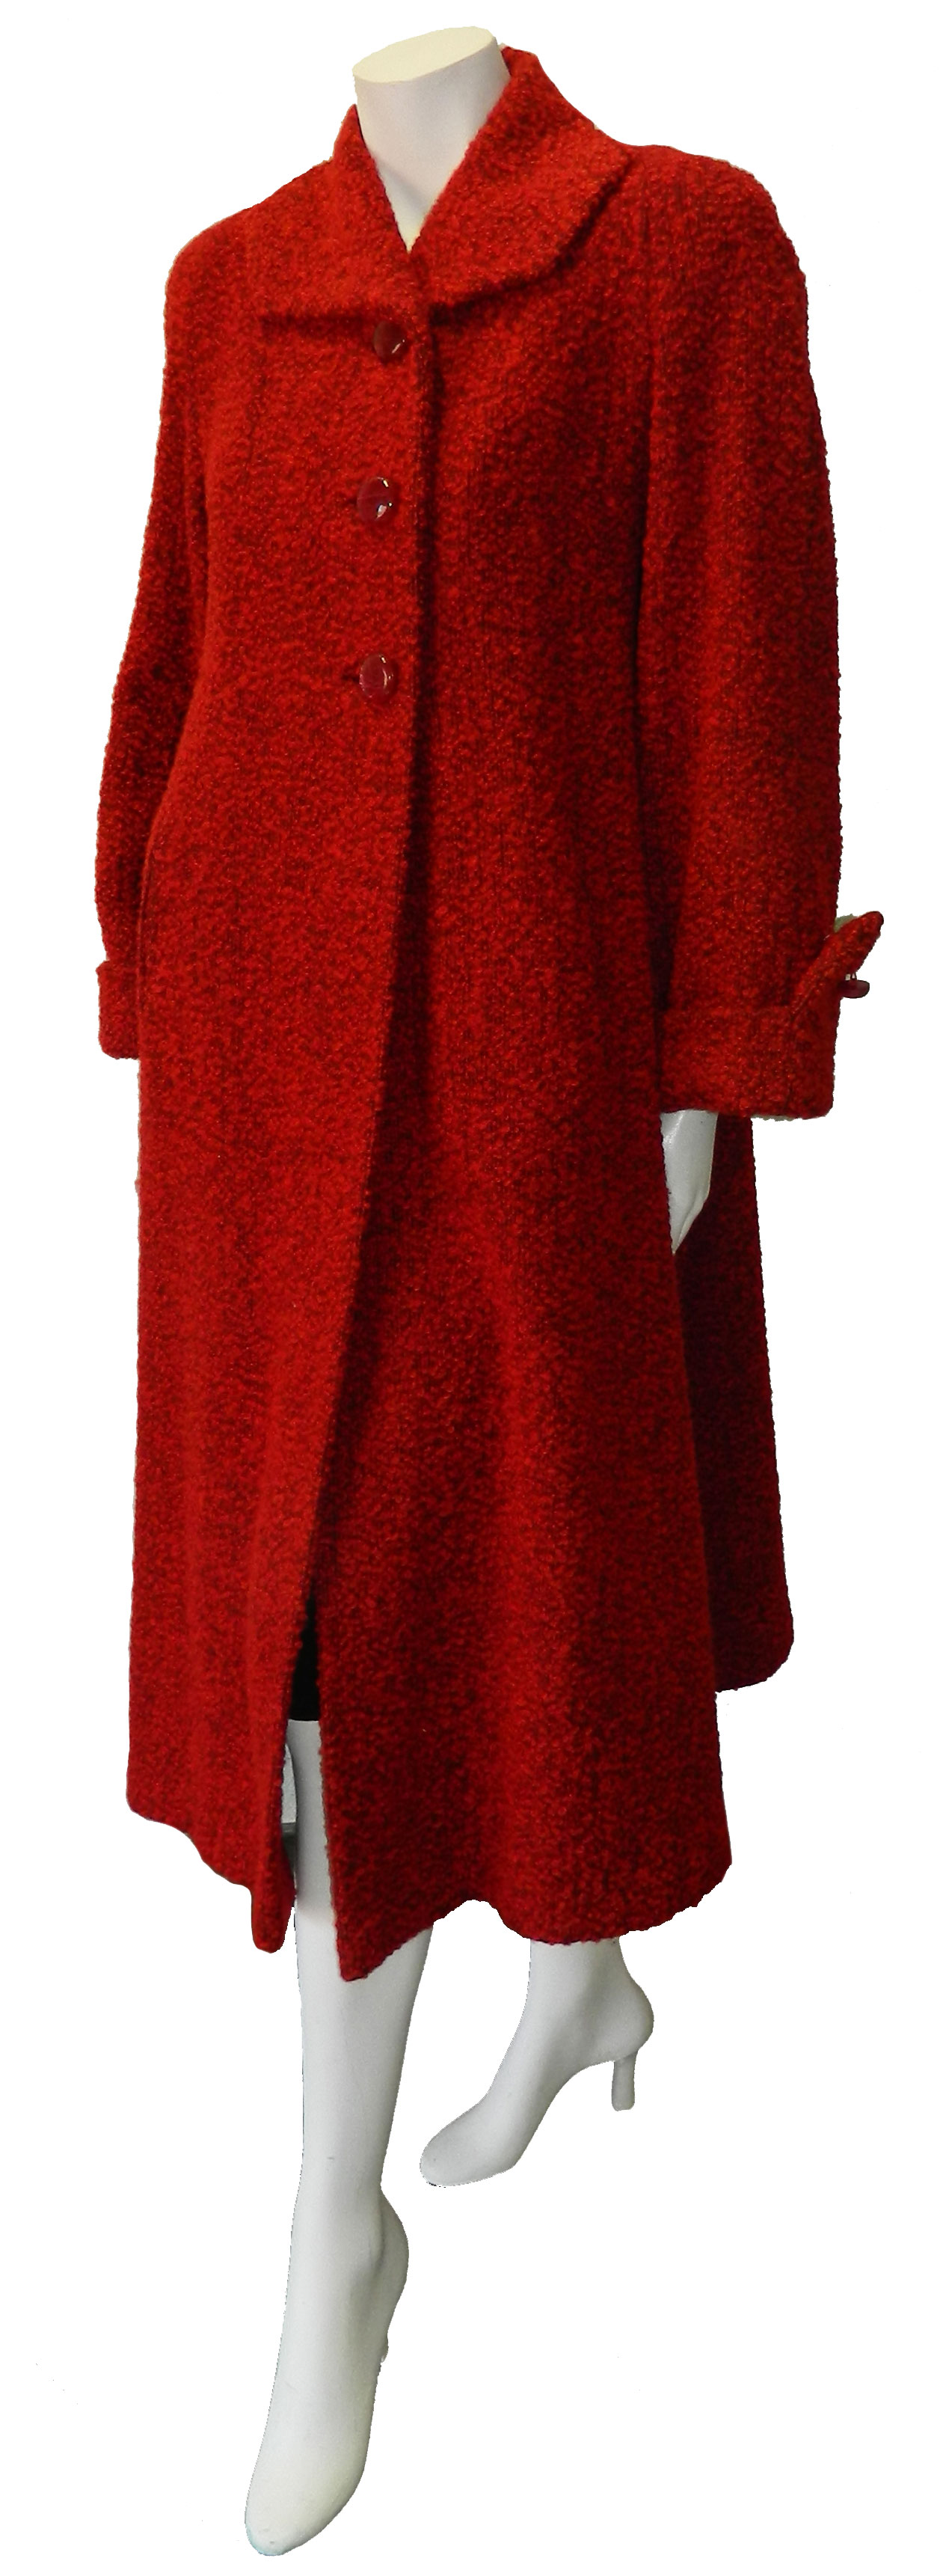 1950's women's coat